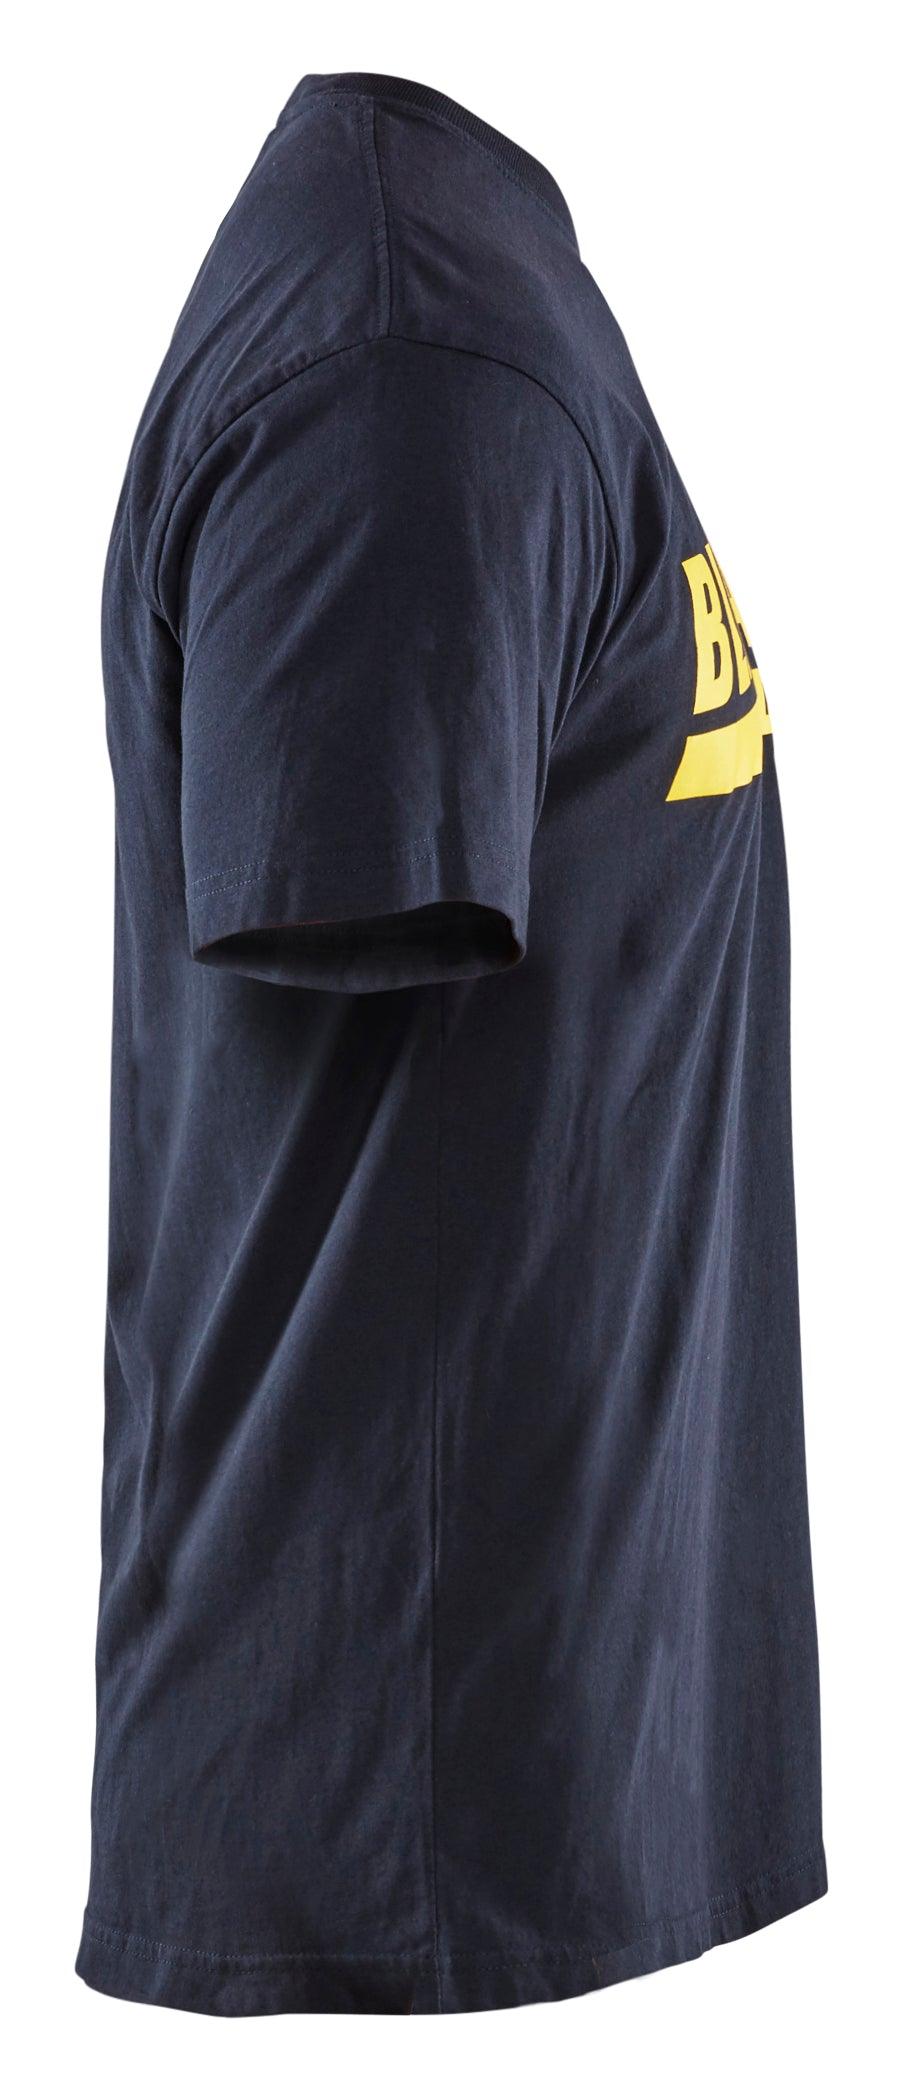 Blaklader 3555 Short Sleeve T-Shirt with Blaklader Logo - Dark Navy - Trusted Gear Company LLC